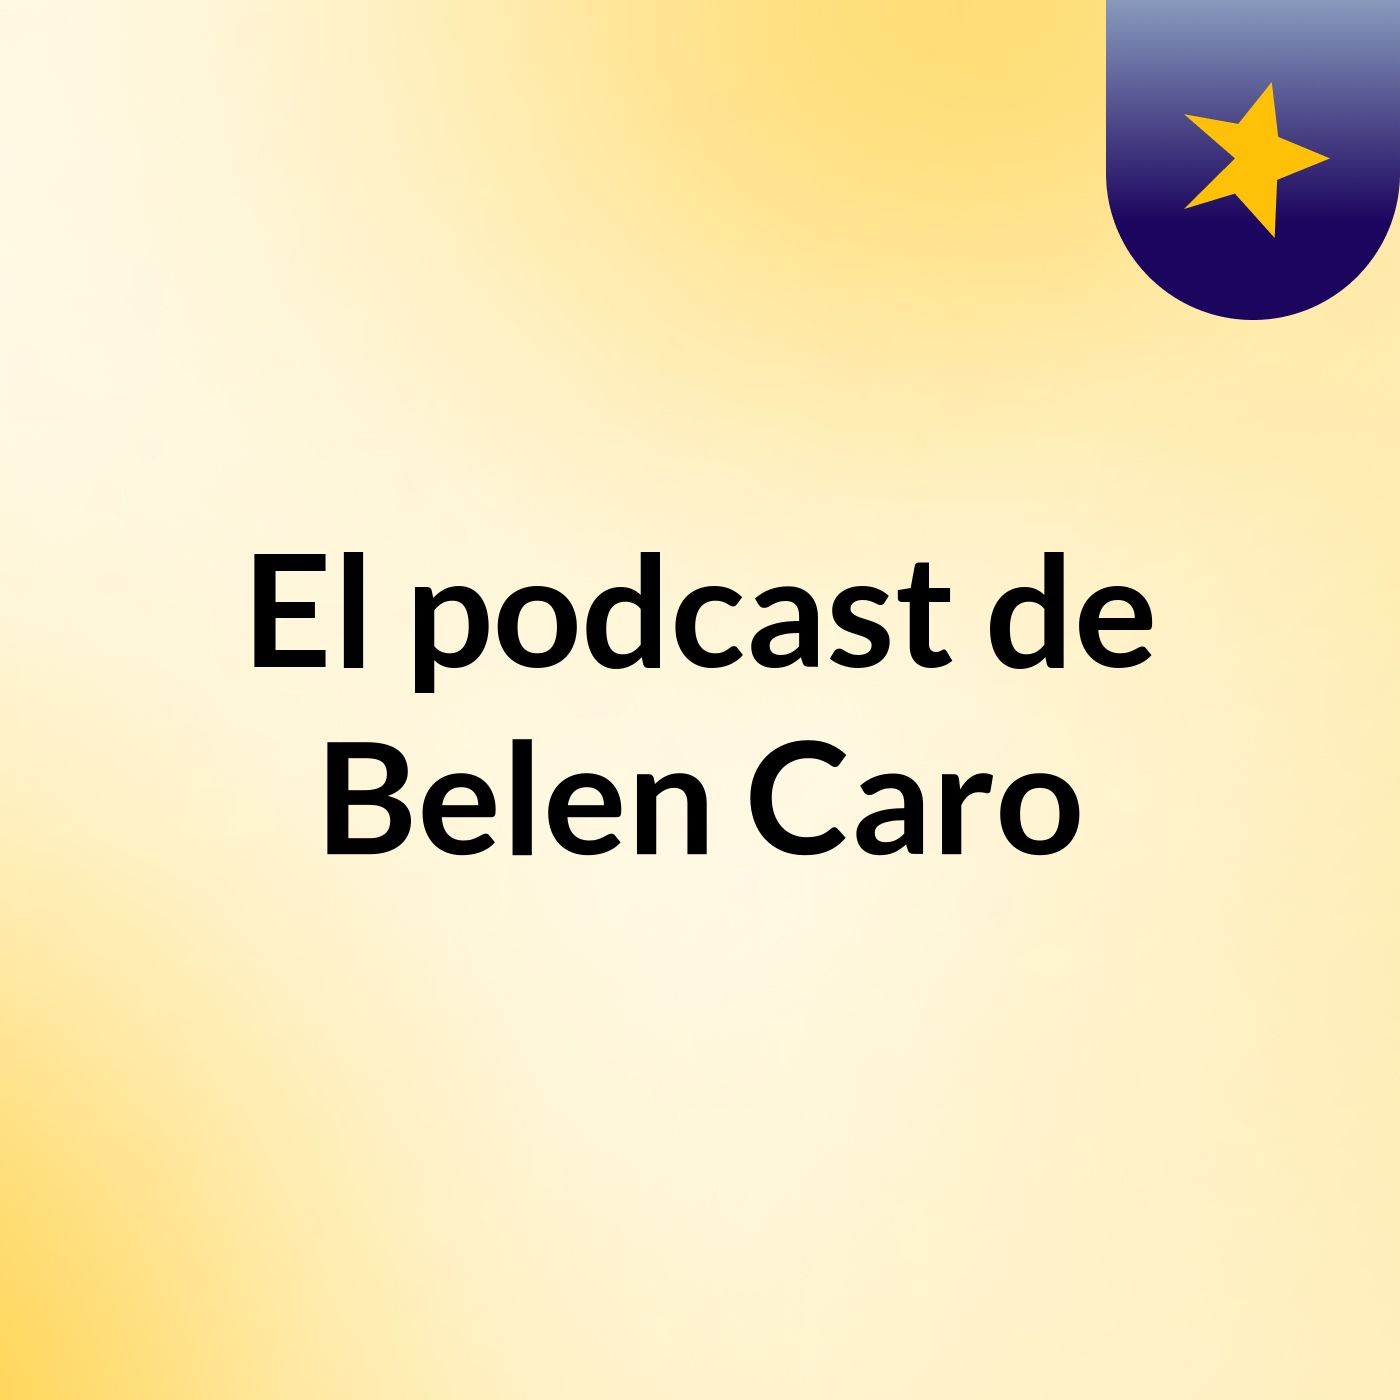 El podcast de Belen Caro